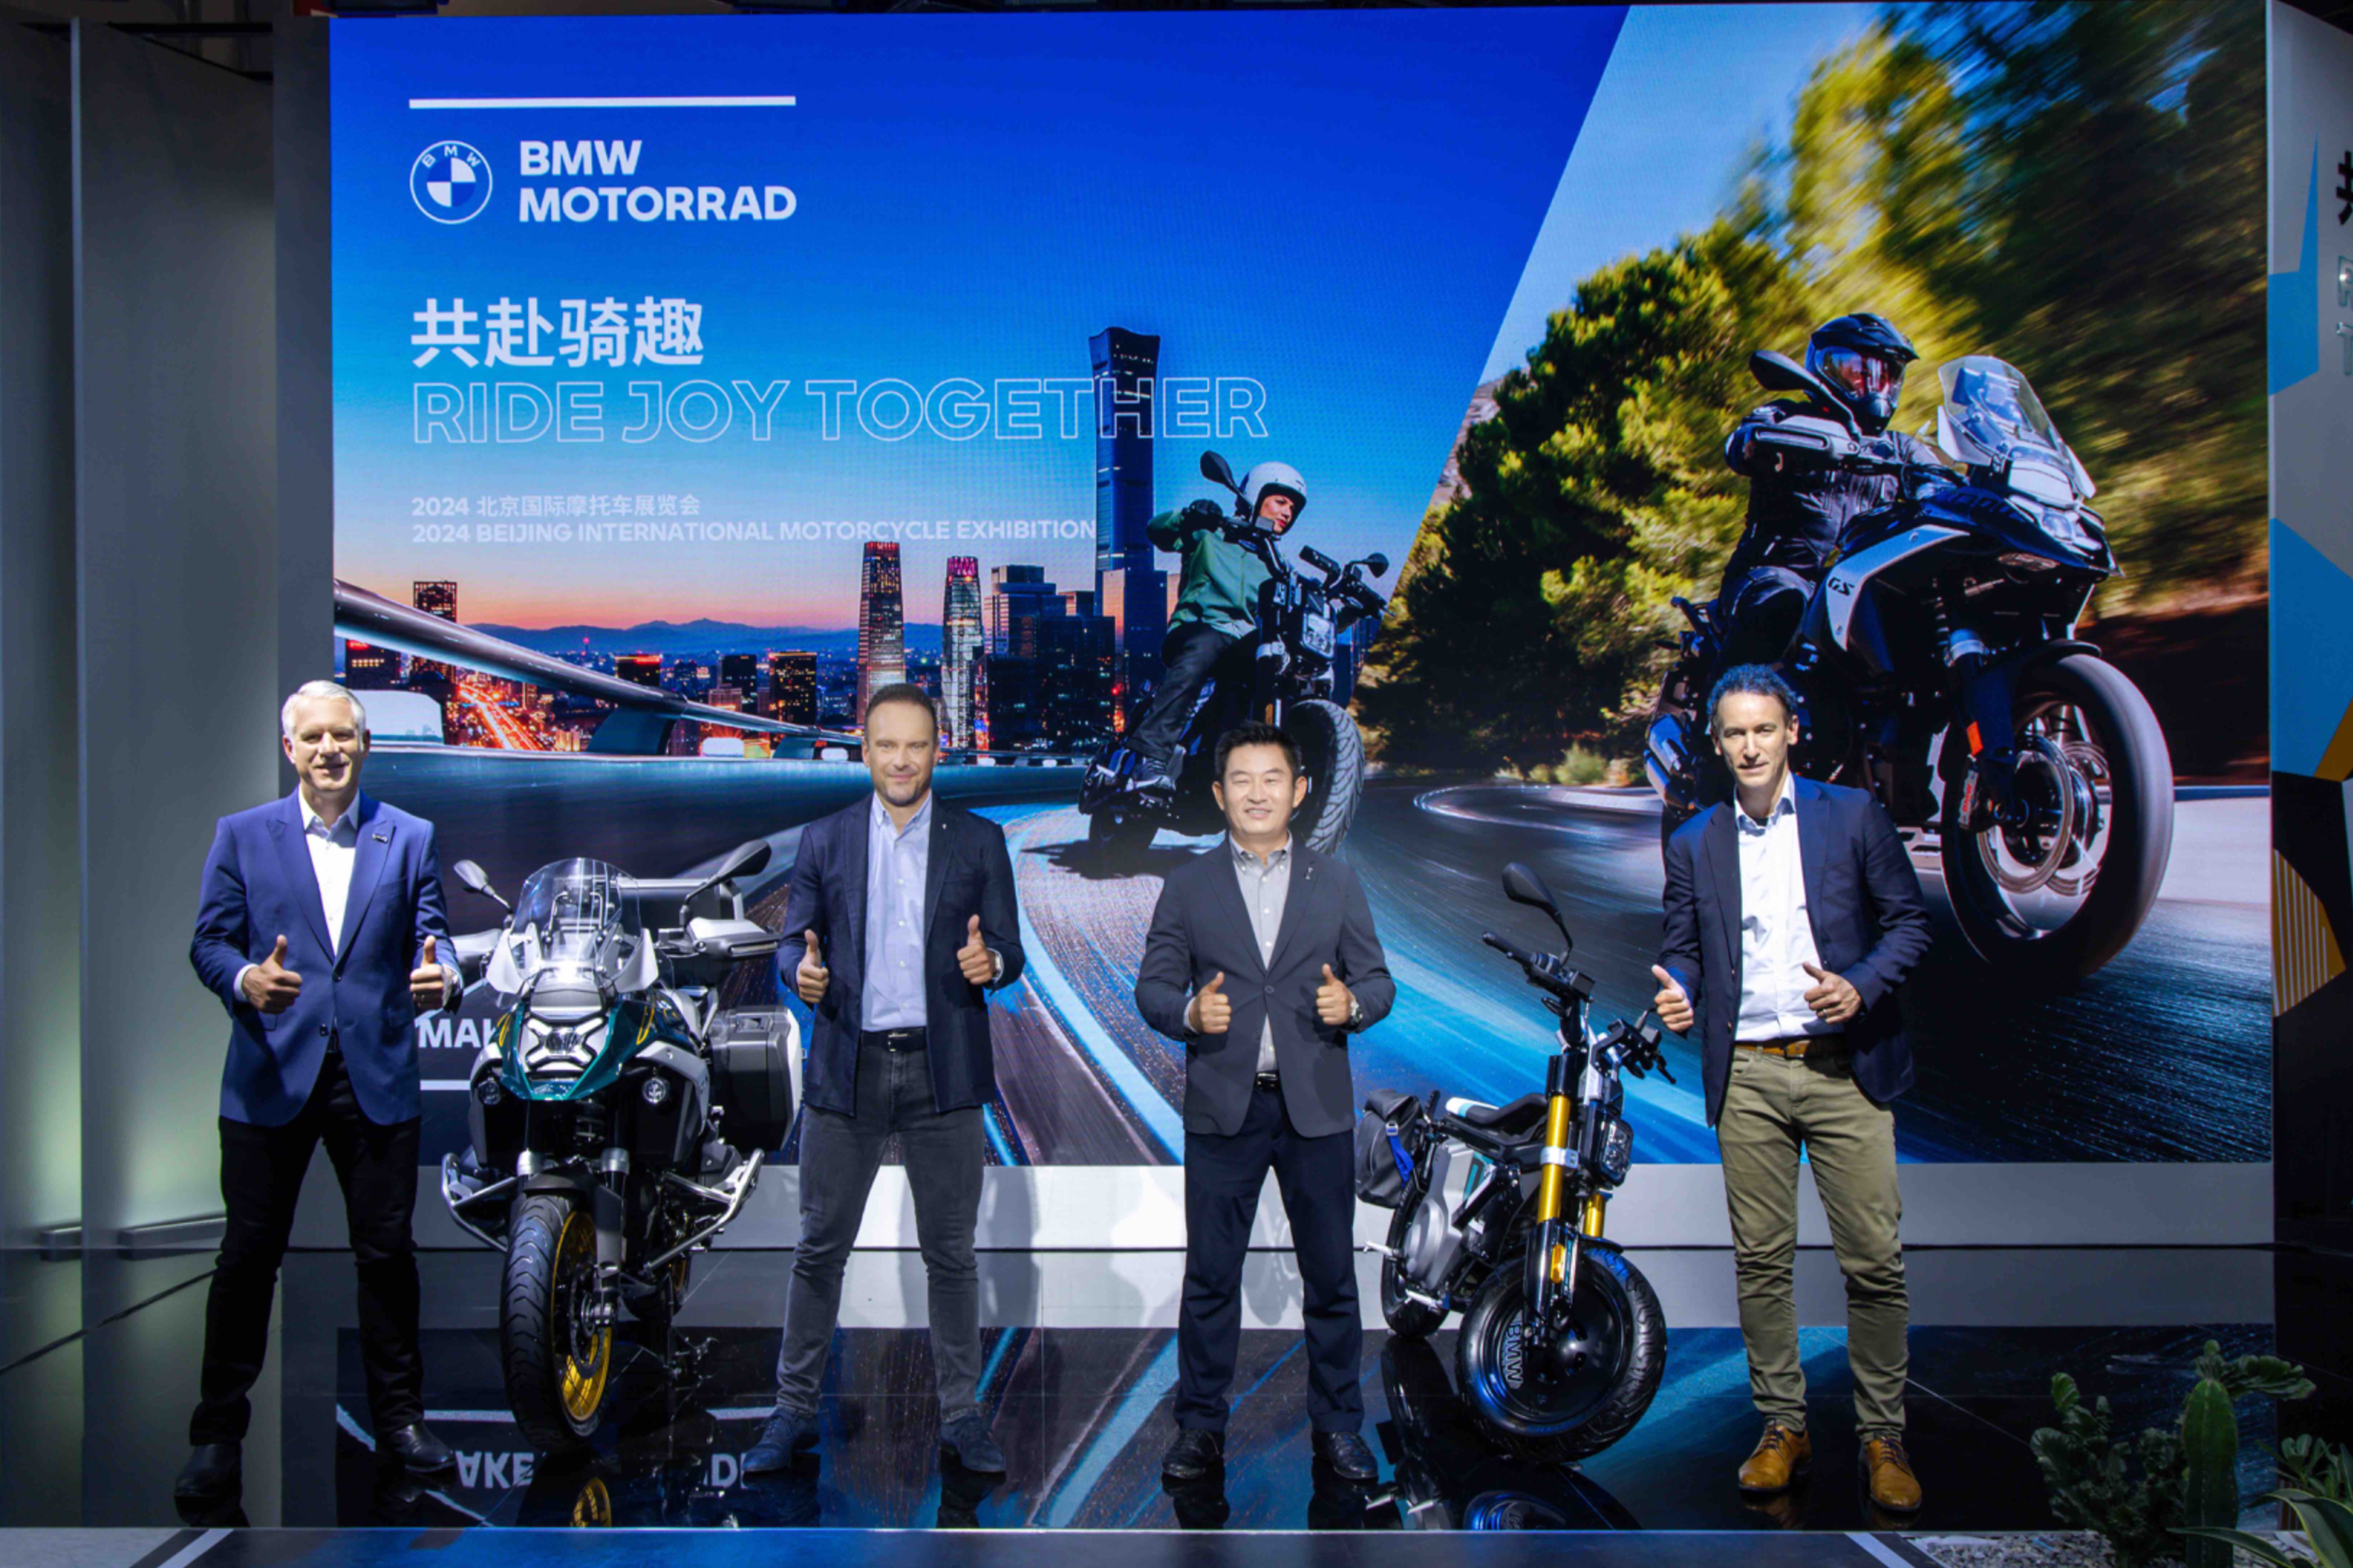 全新R1300GS与全新BMWCE 02登陆北京国际摩托车展